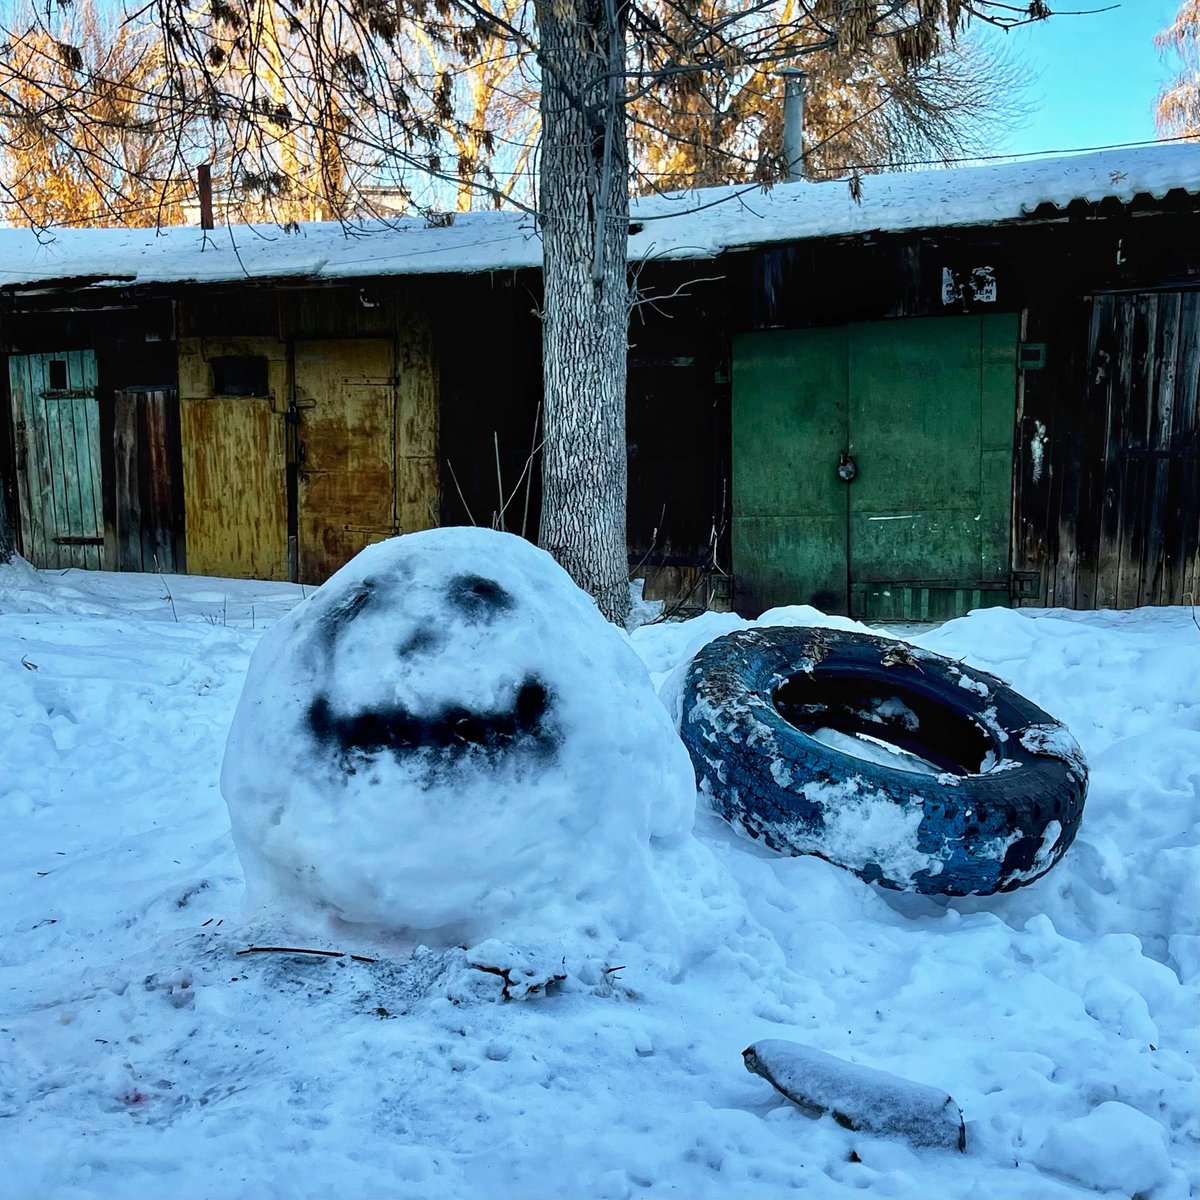 В тему последнего выходного. У меня есть тематический  ⛄️ #самара #зима #снег #новыйгод #снеговик  #эстетикаебеней #уютныеебеня
 #streetphotography #streetphotographer #streetphotorussia #streetphoto_russia